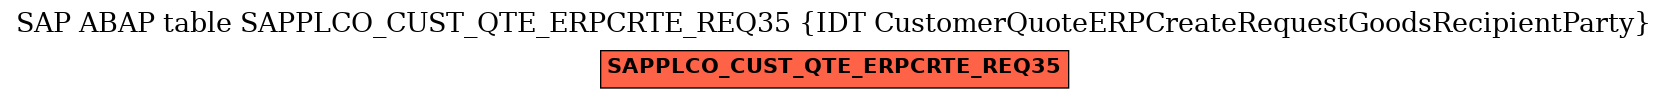 E-R Diagram for table SAPPLCO_CUST_QTE_ERPCRTE_REQ35 (IDT CustomerQuoteERPCreateRequestGoodsRecipientParty)